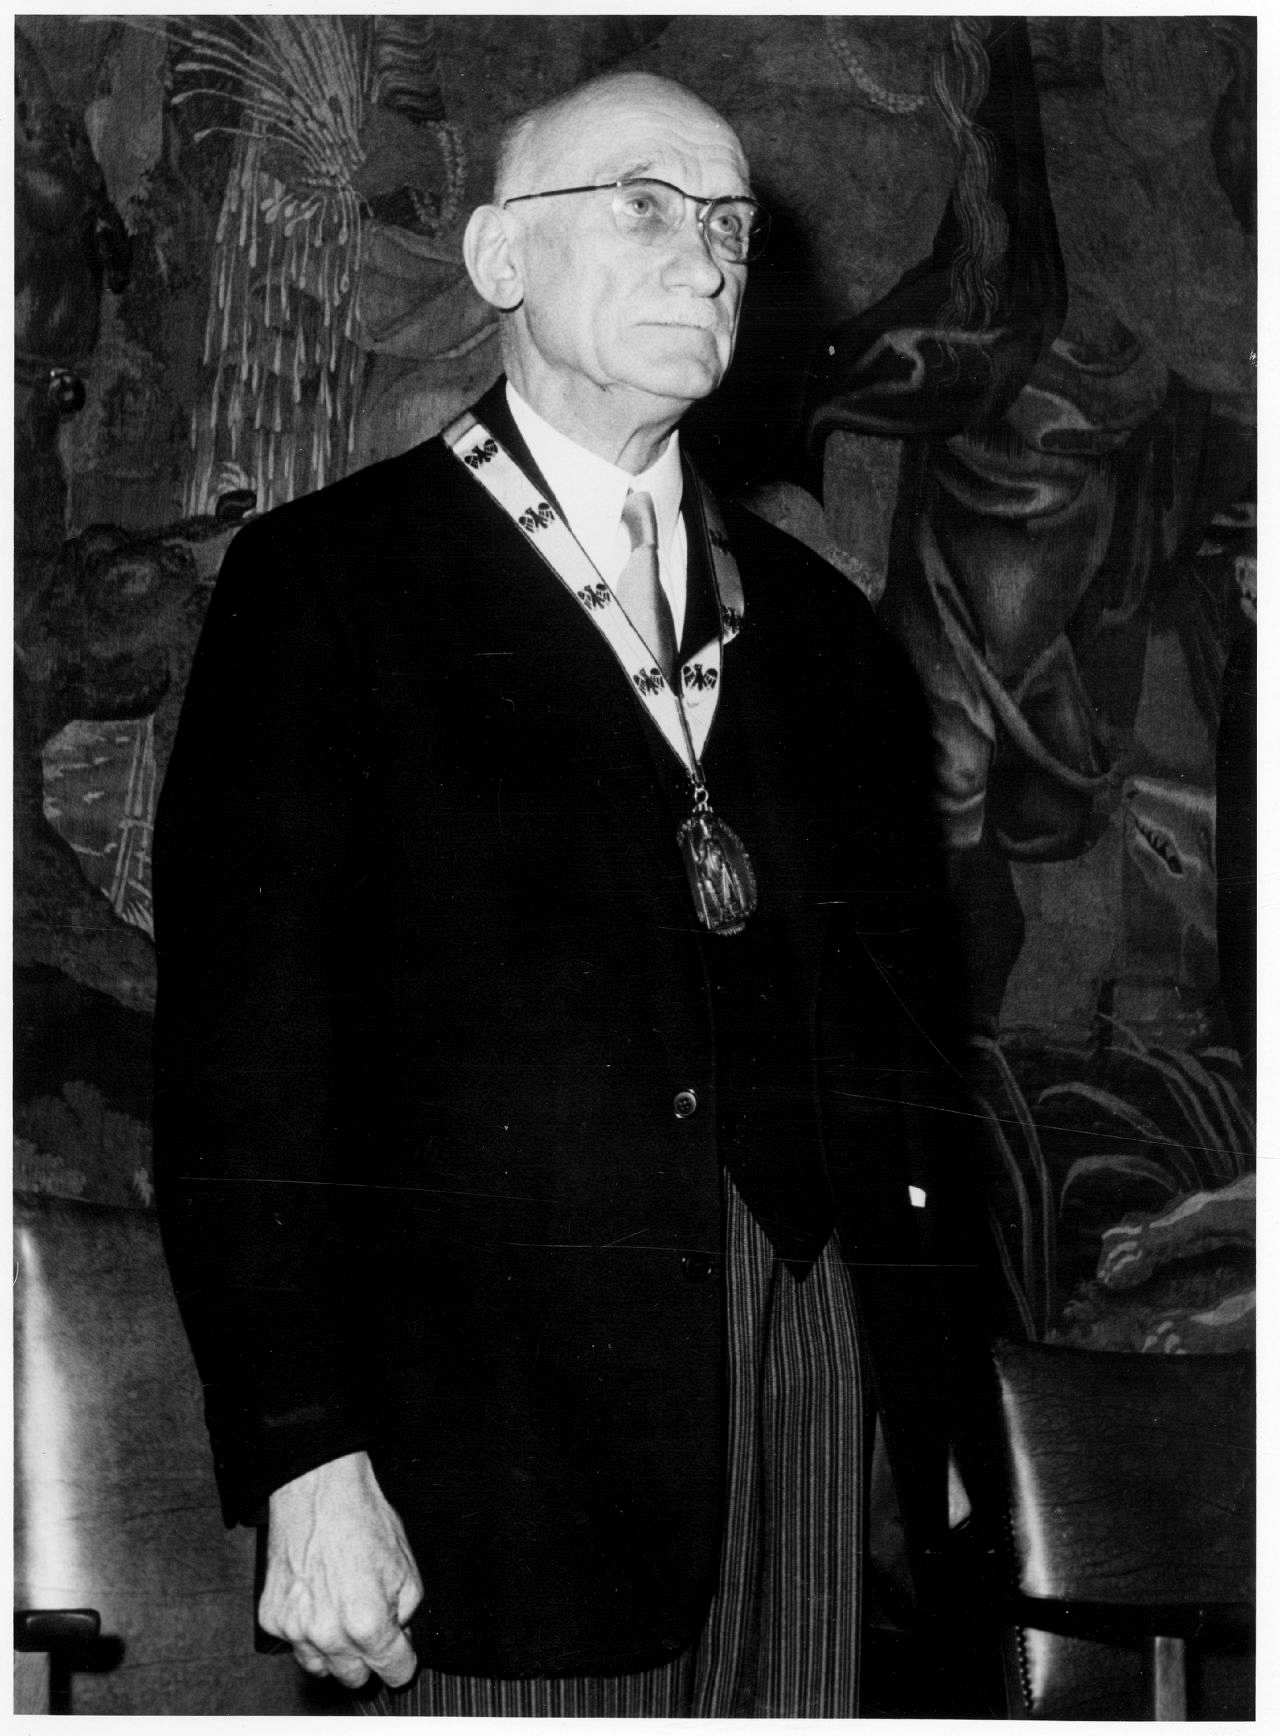 Fotografie des französischen Politikers Robert Schuman, bei den Feierlichkeiten zur Verleihung des Karlspreises, 1958.